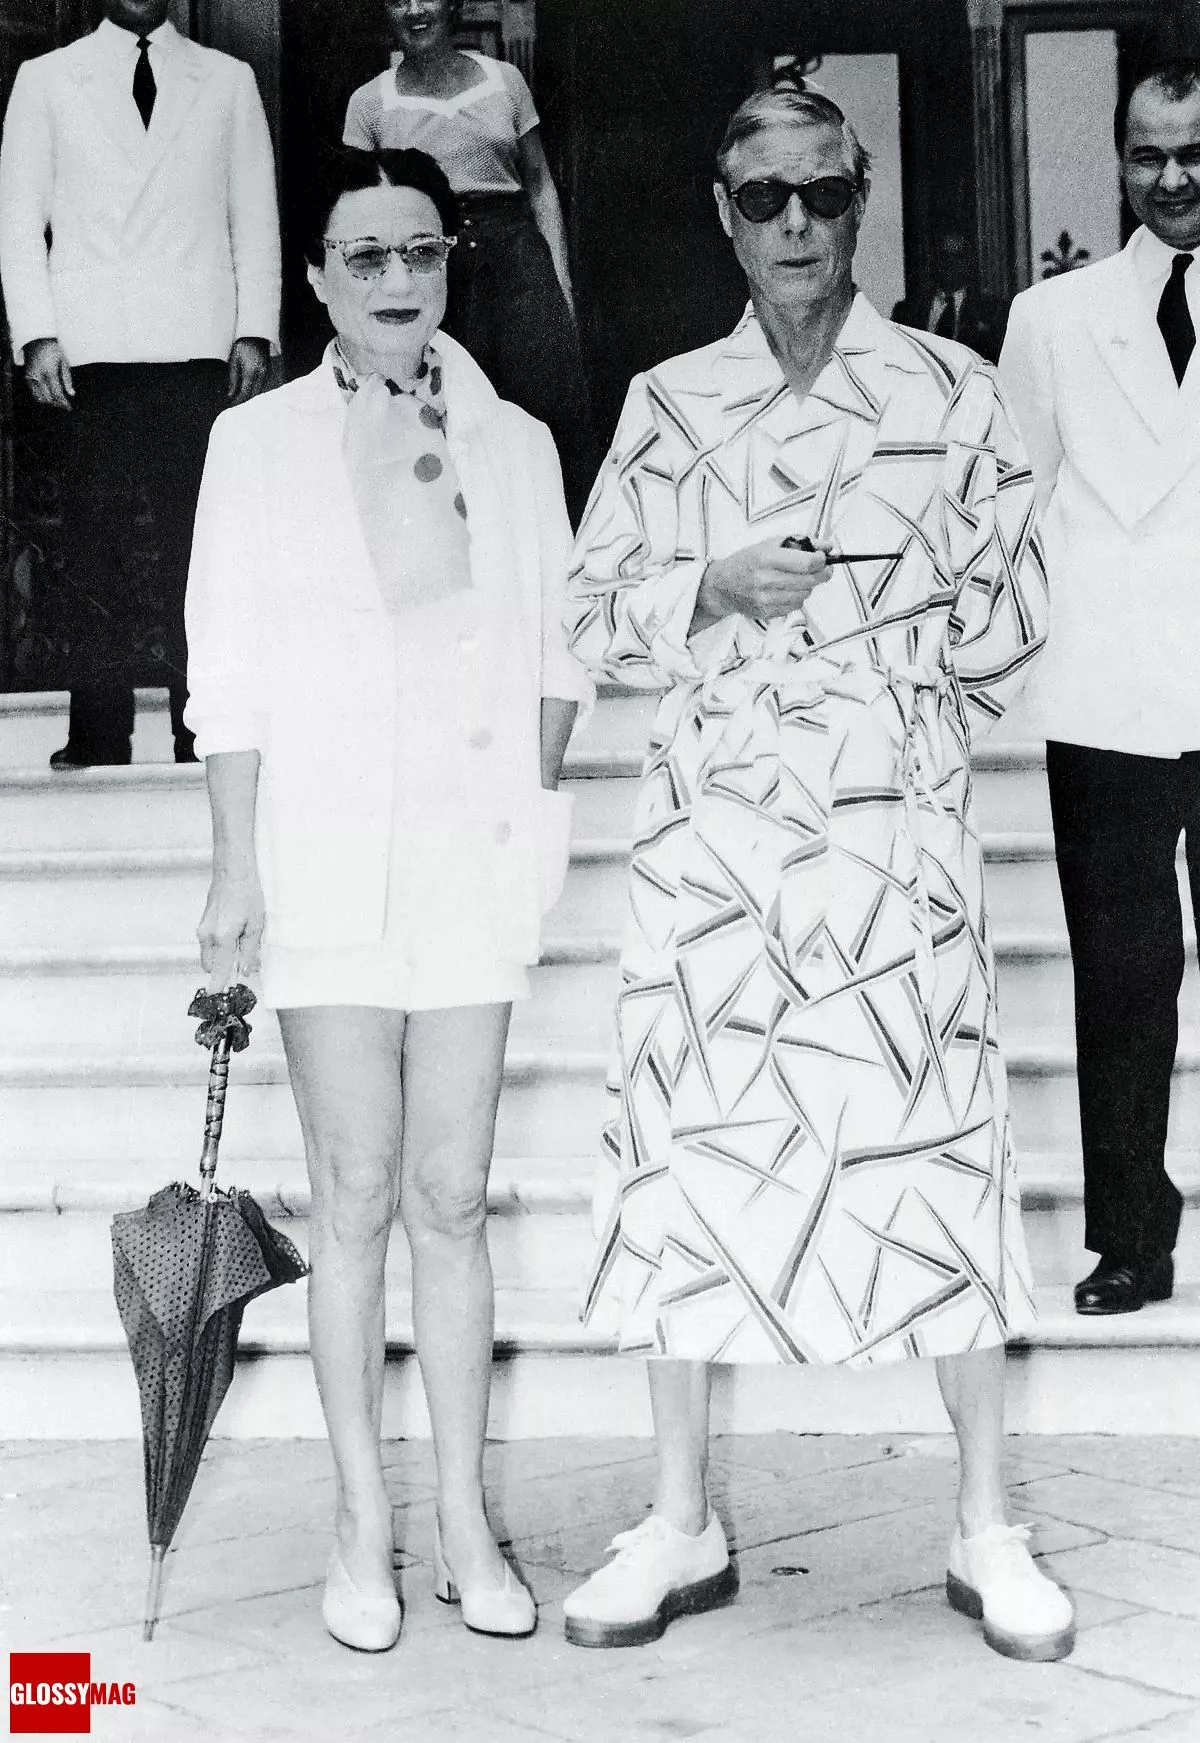 Герцог и герцогиня Виндзорские на морском курорте Рапалло на Итальянской Ривьере. Они прибыли в Италию из Канн, путешествуя на своей яхте, 1953 г.